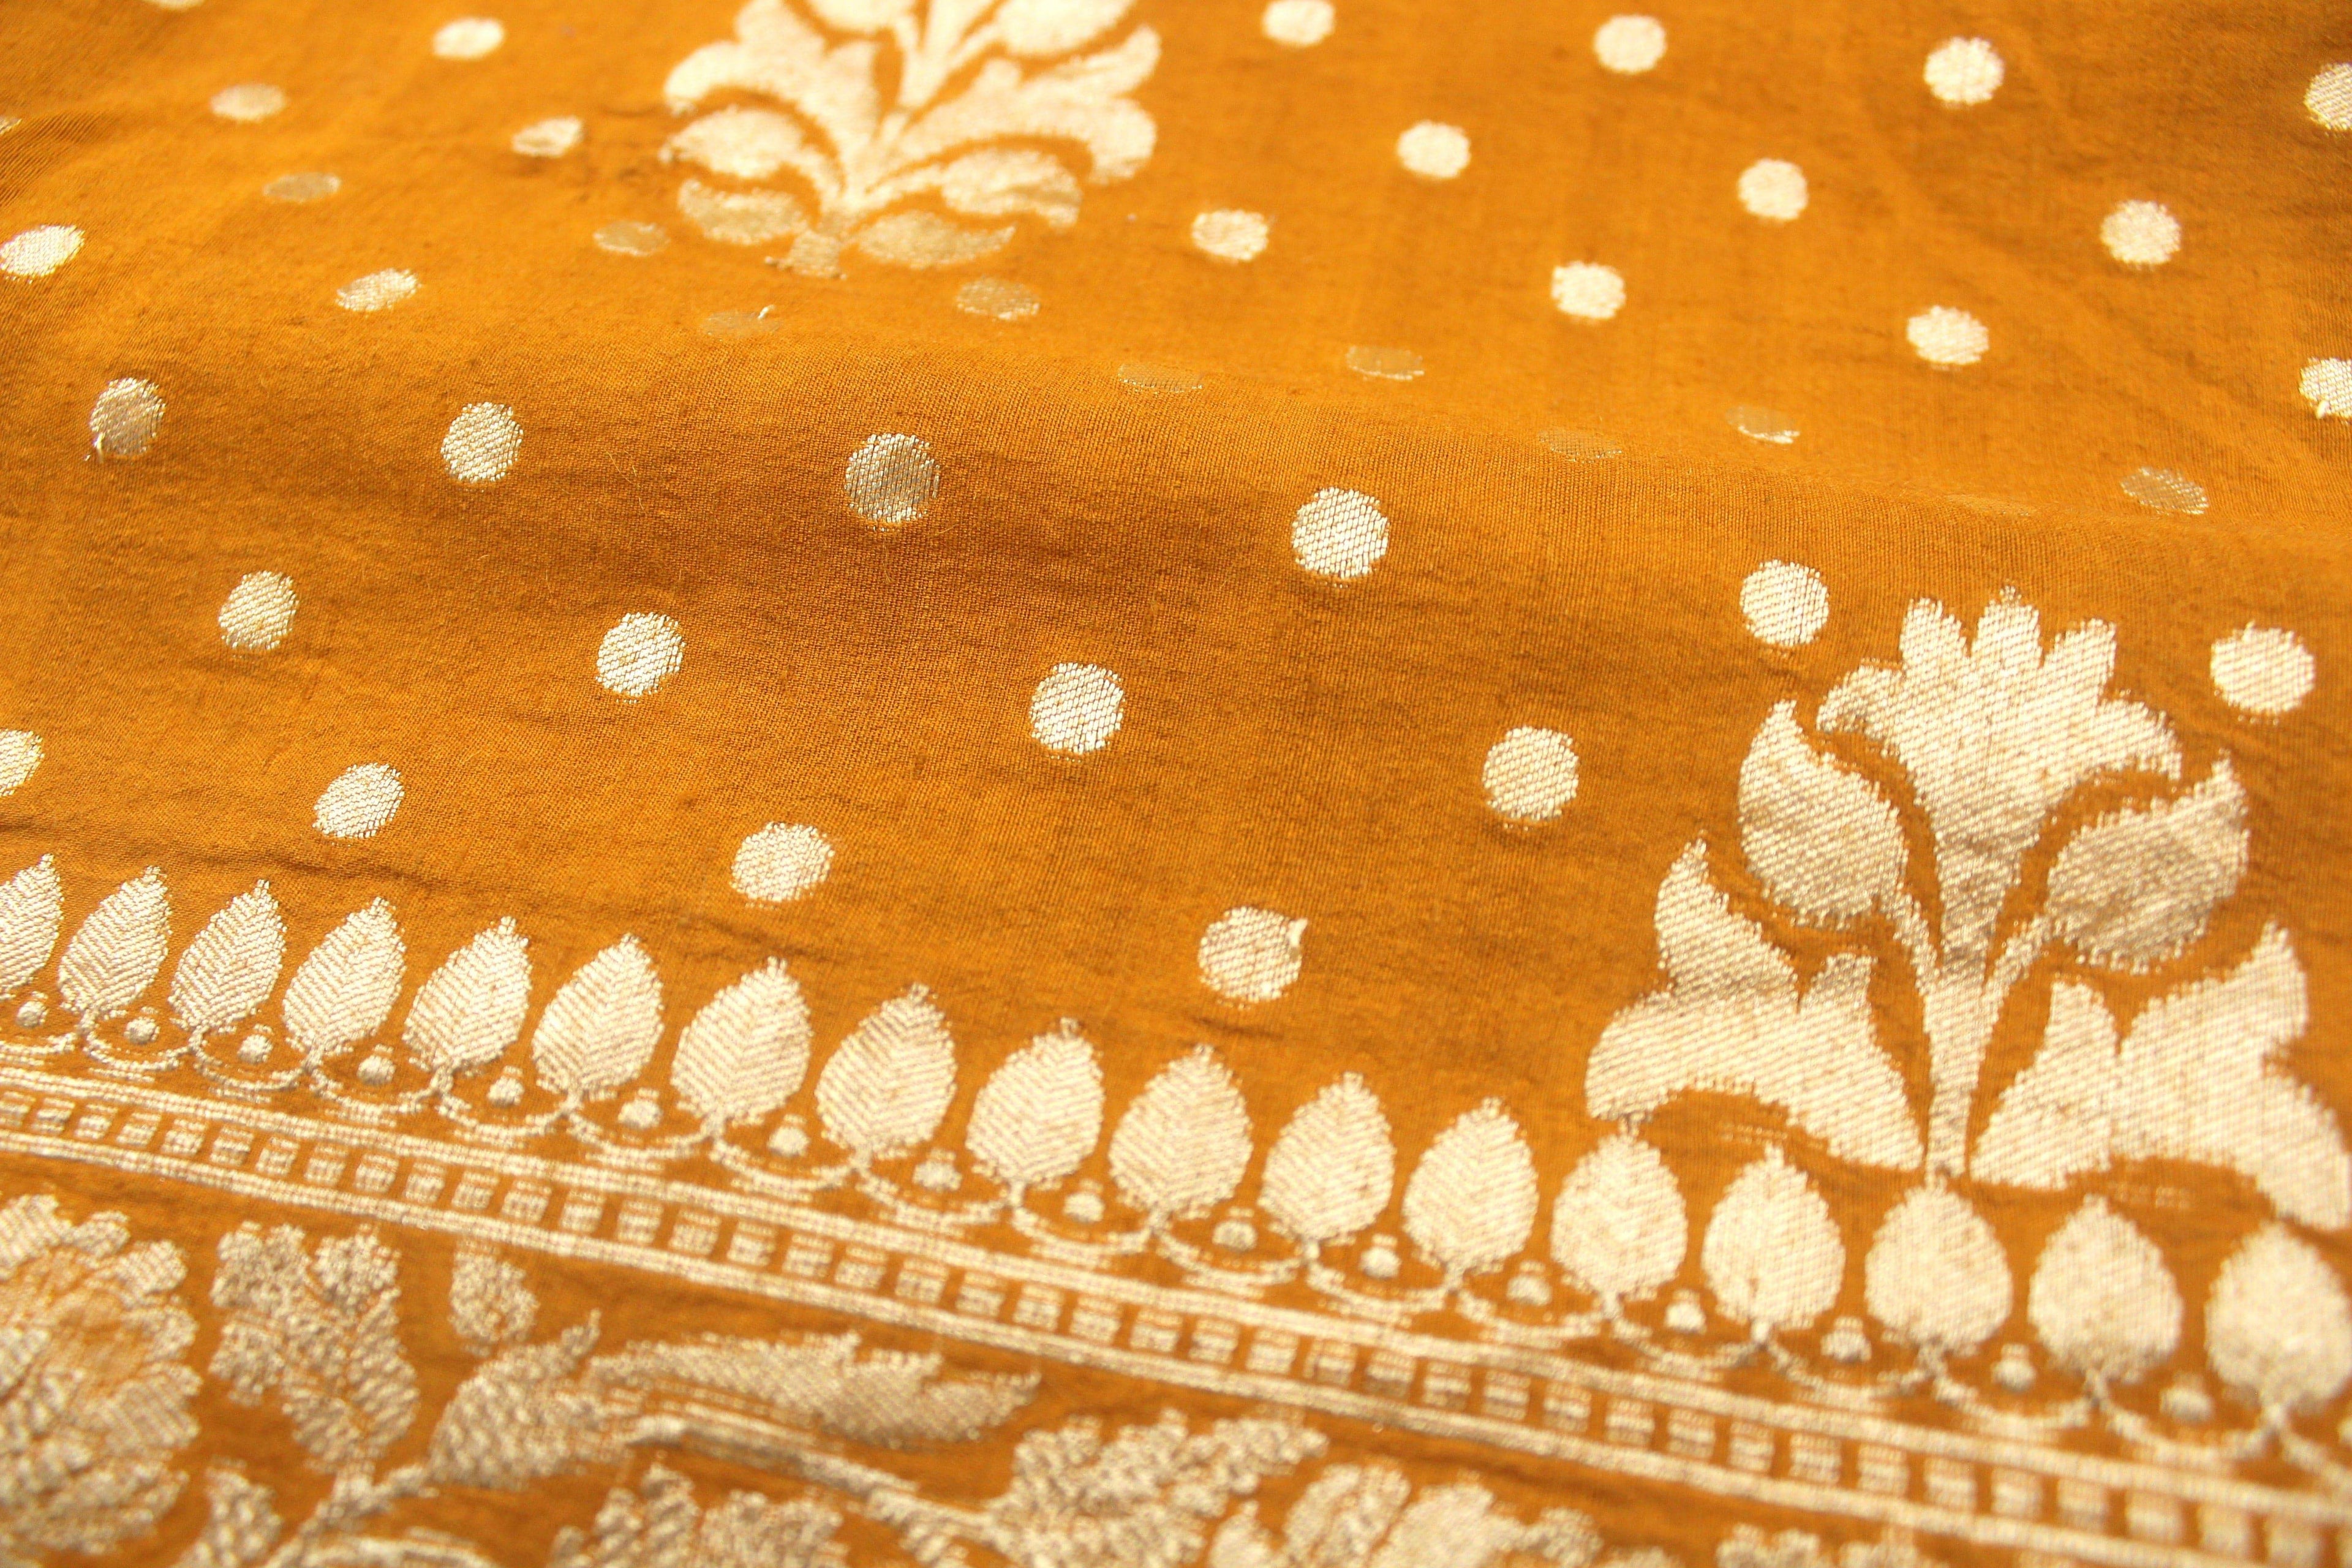 Moonga Silk Handloom Banarasi Saree